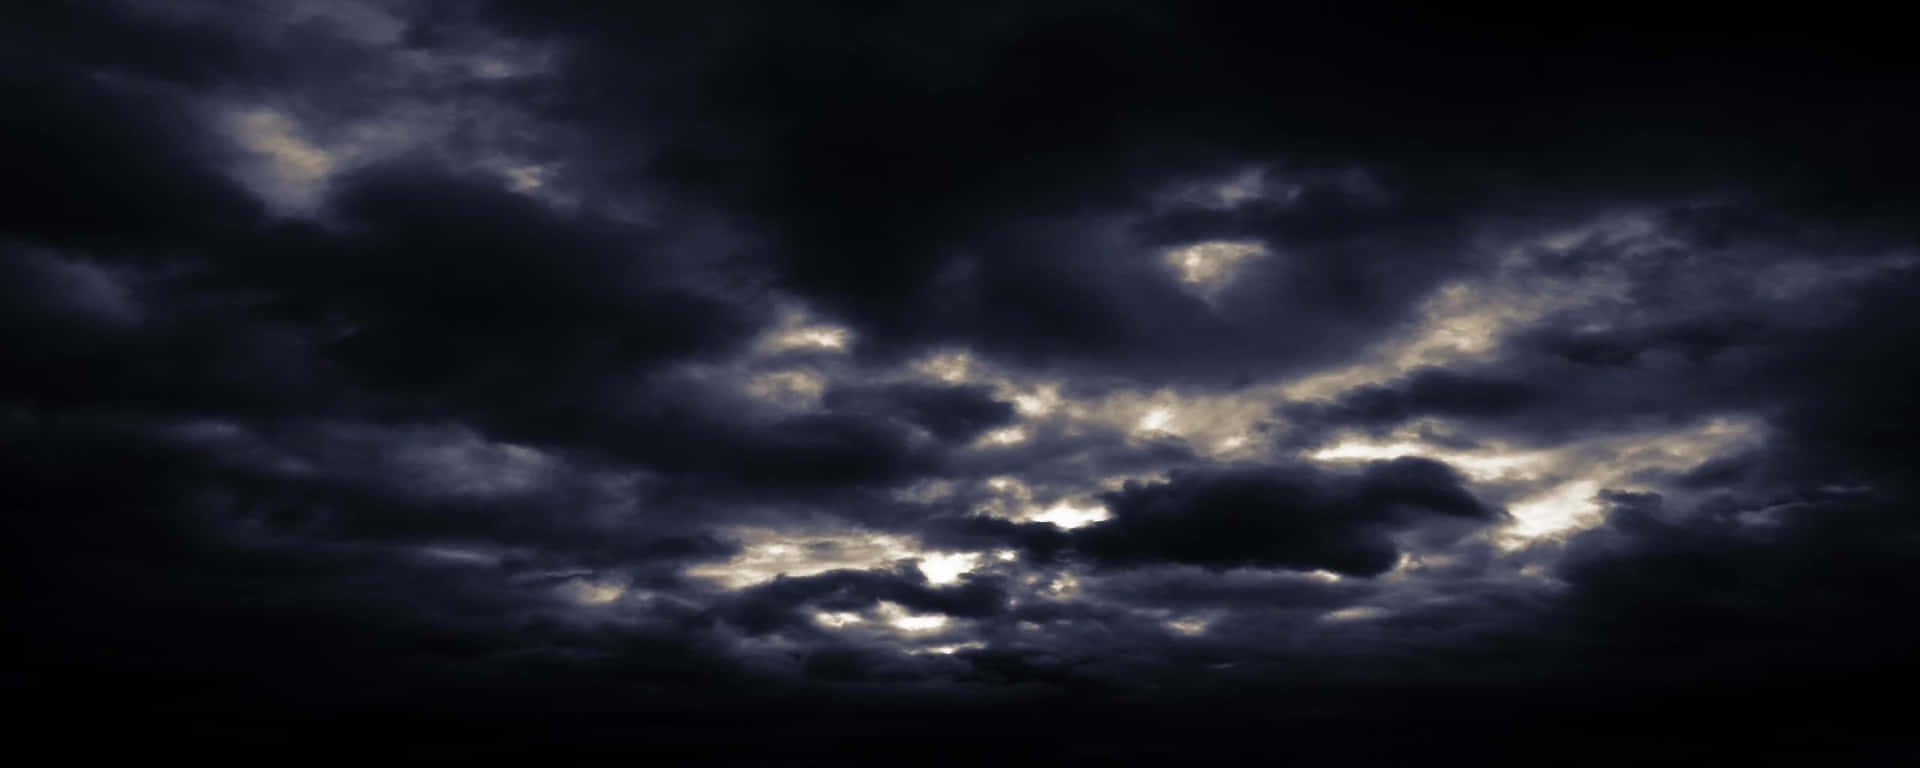 dark clouds in the sky